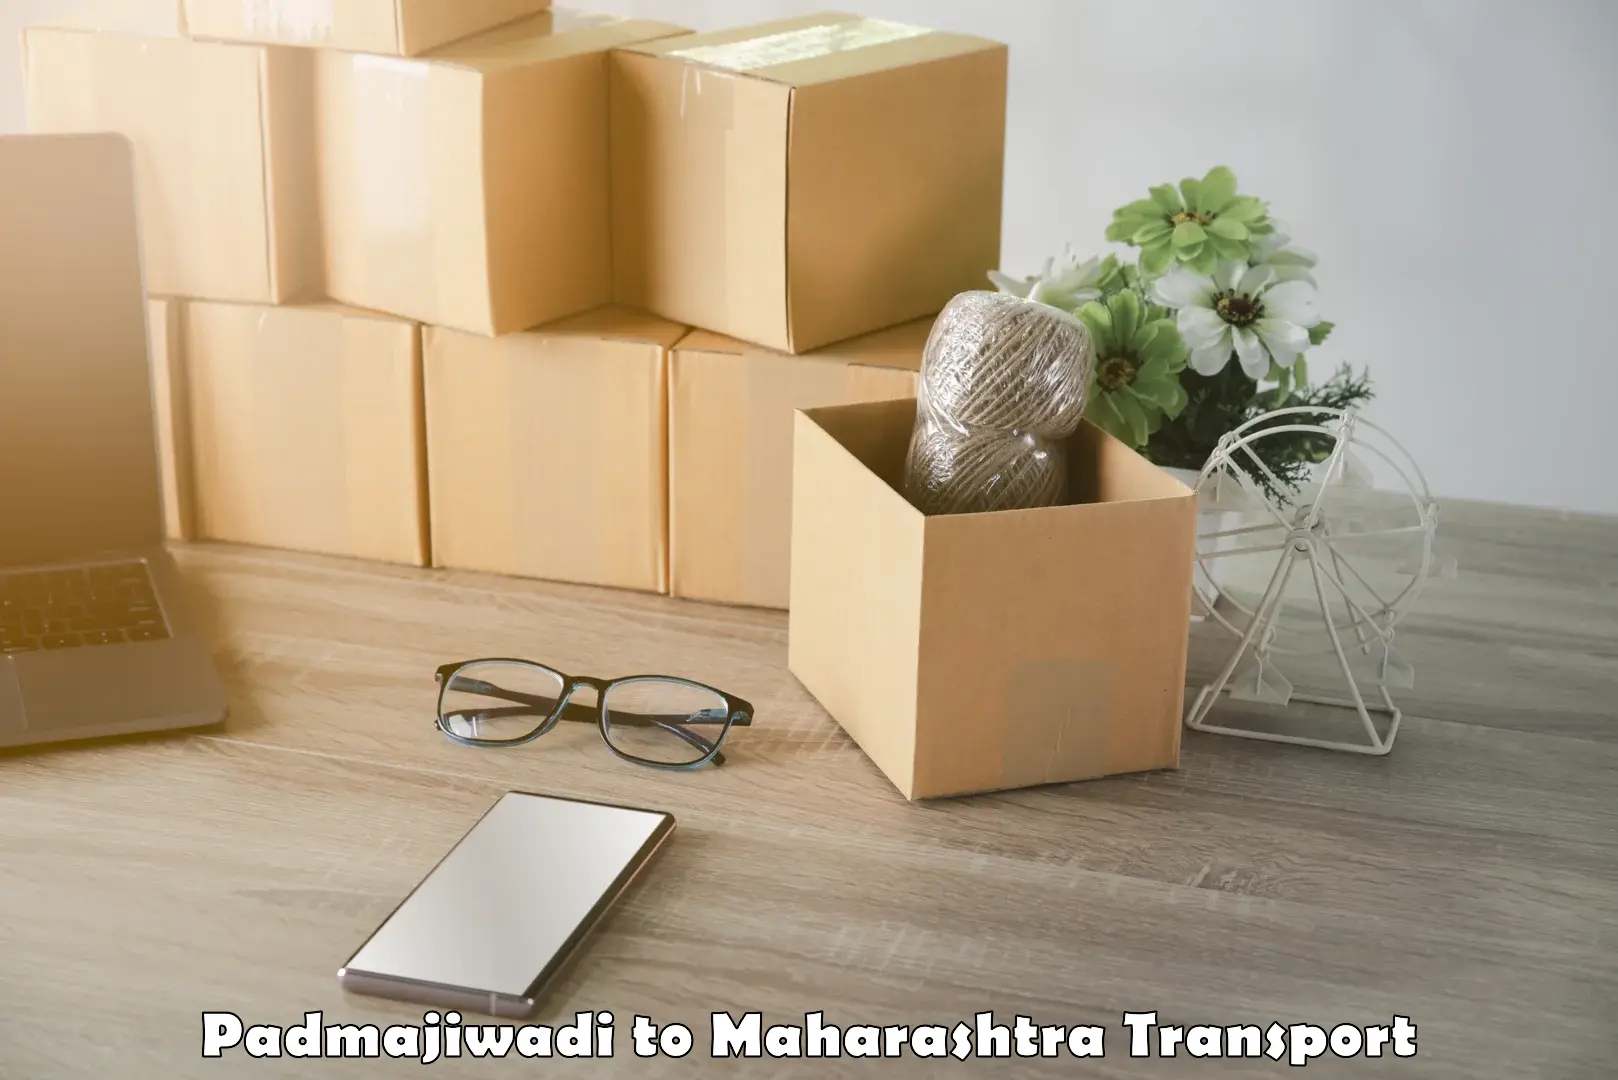 Transport services Padmajiwadi to IIT Mumbai